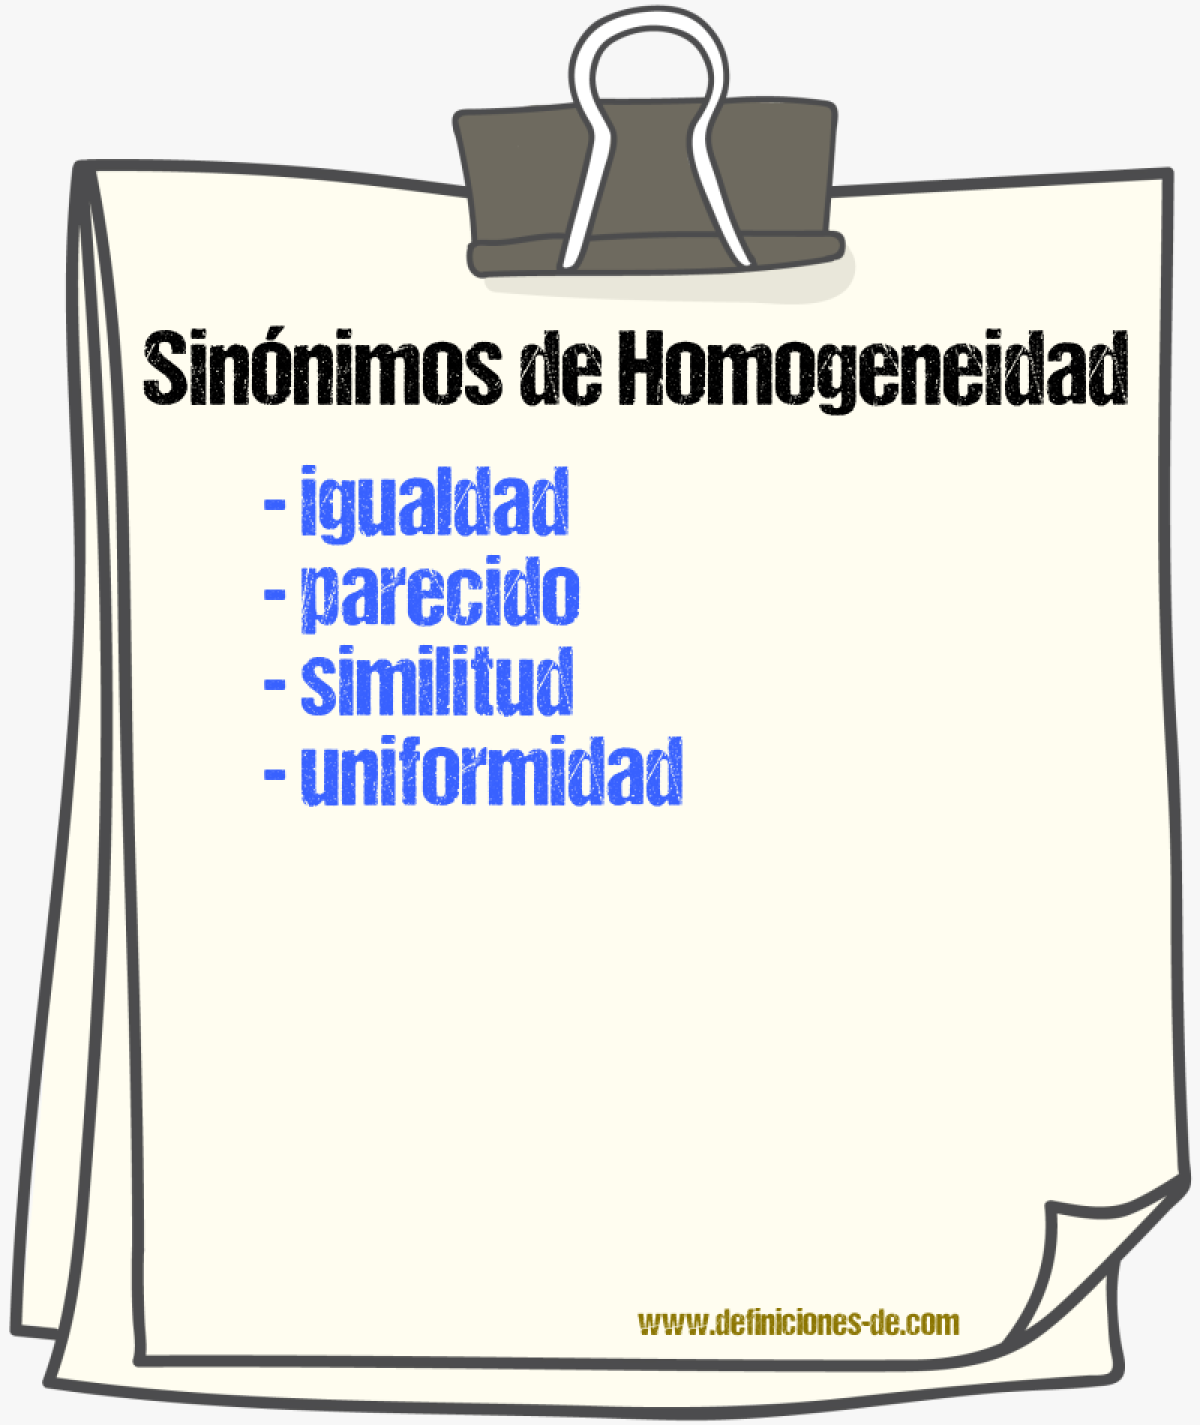 Sinónimos de homogeneidad